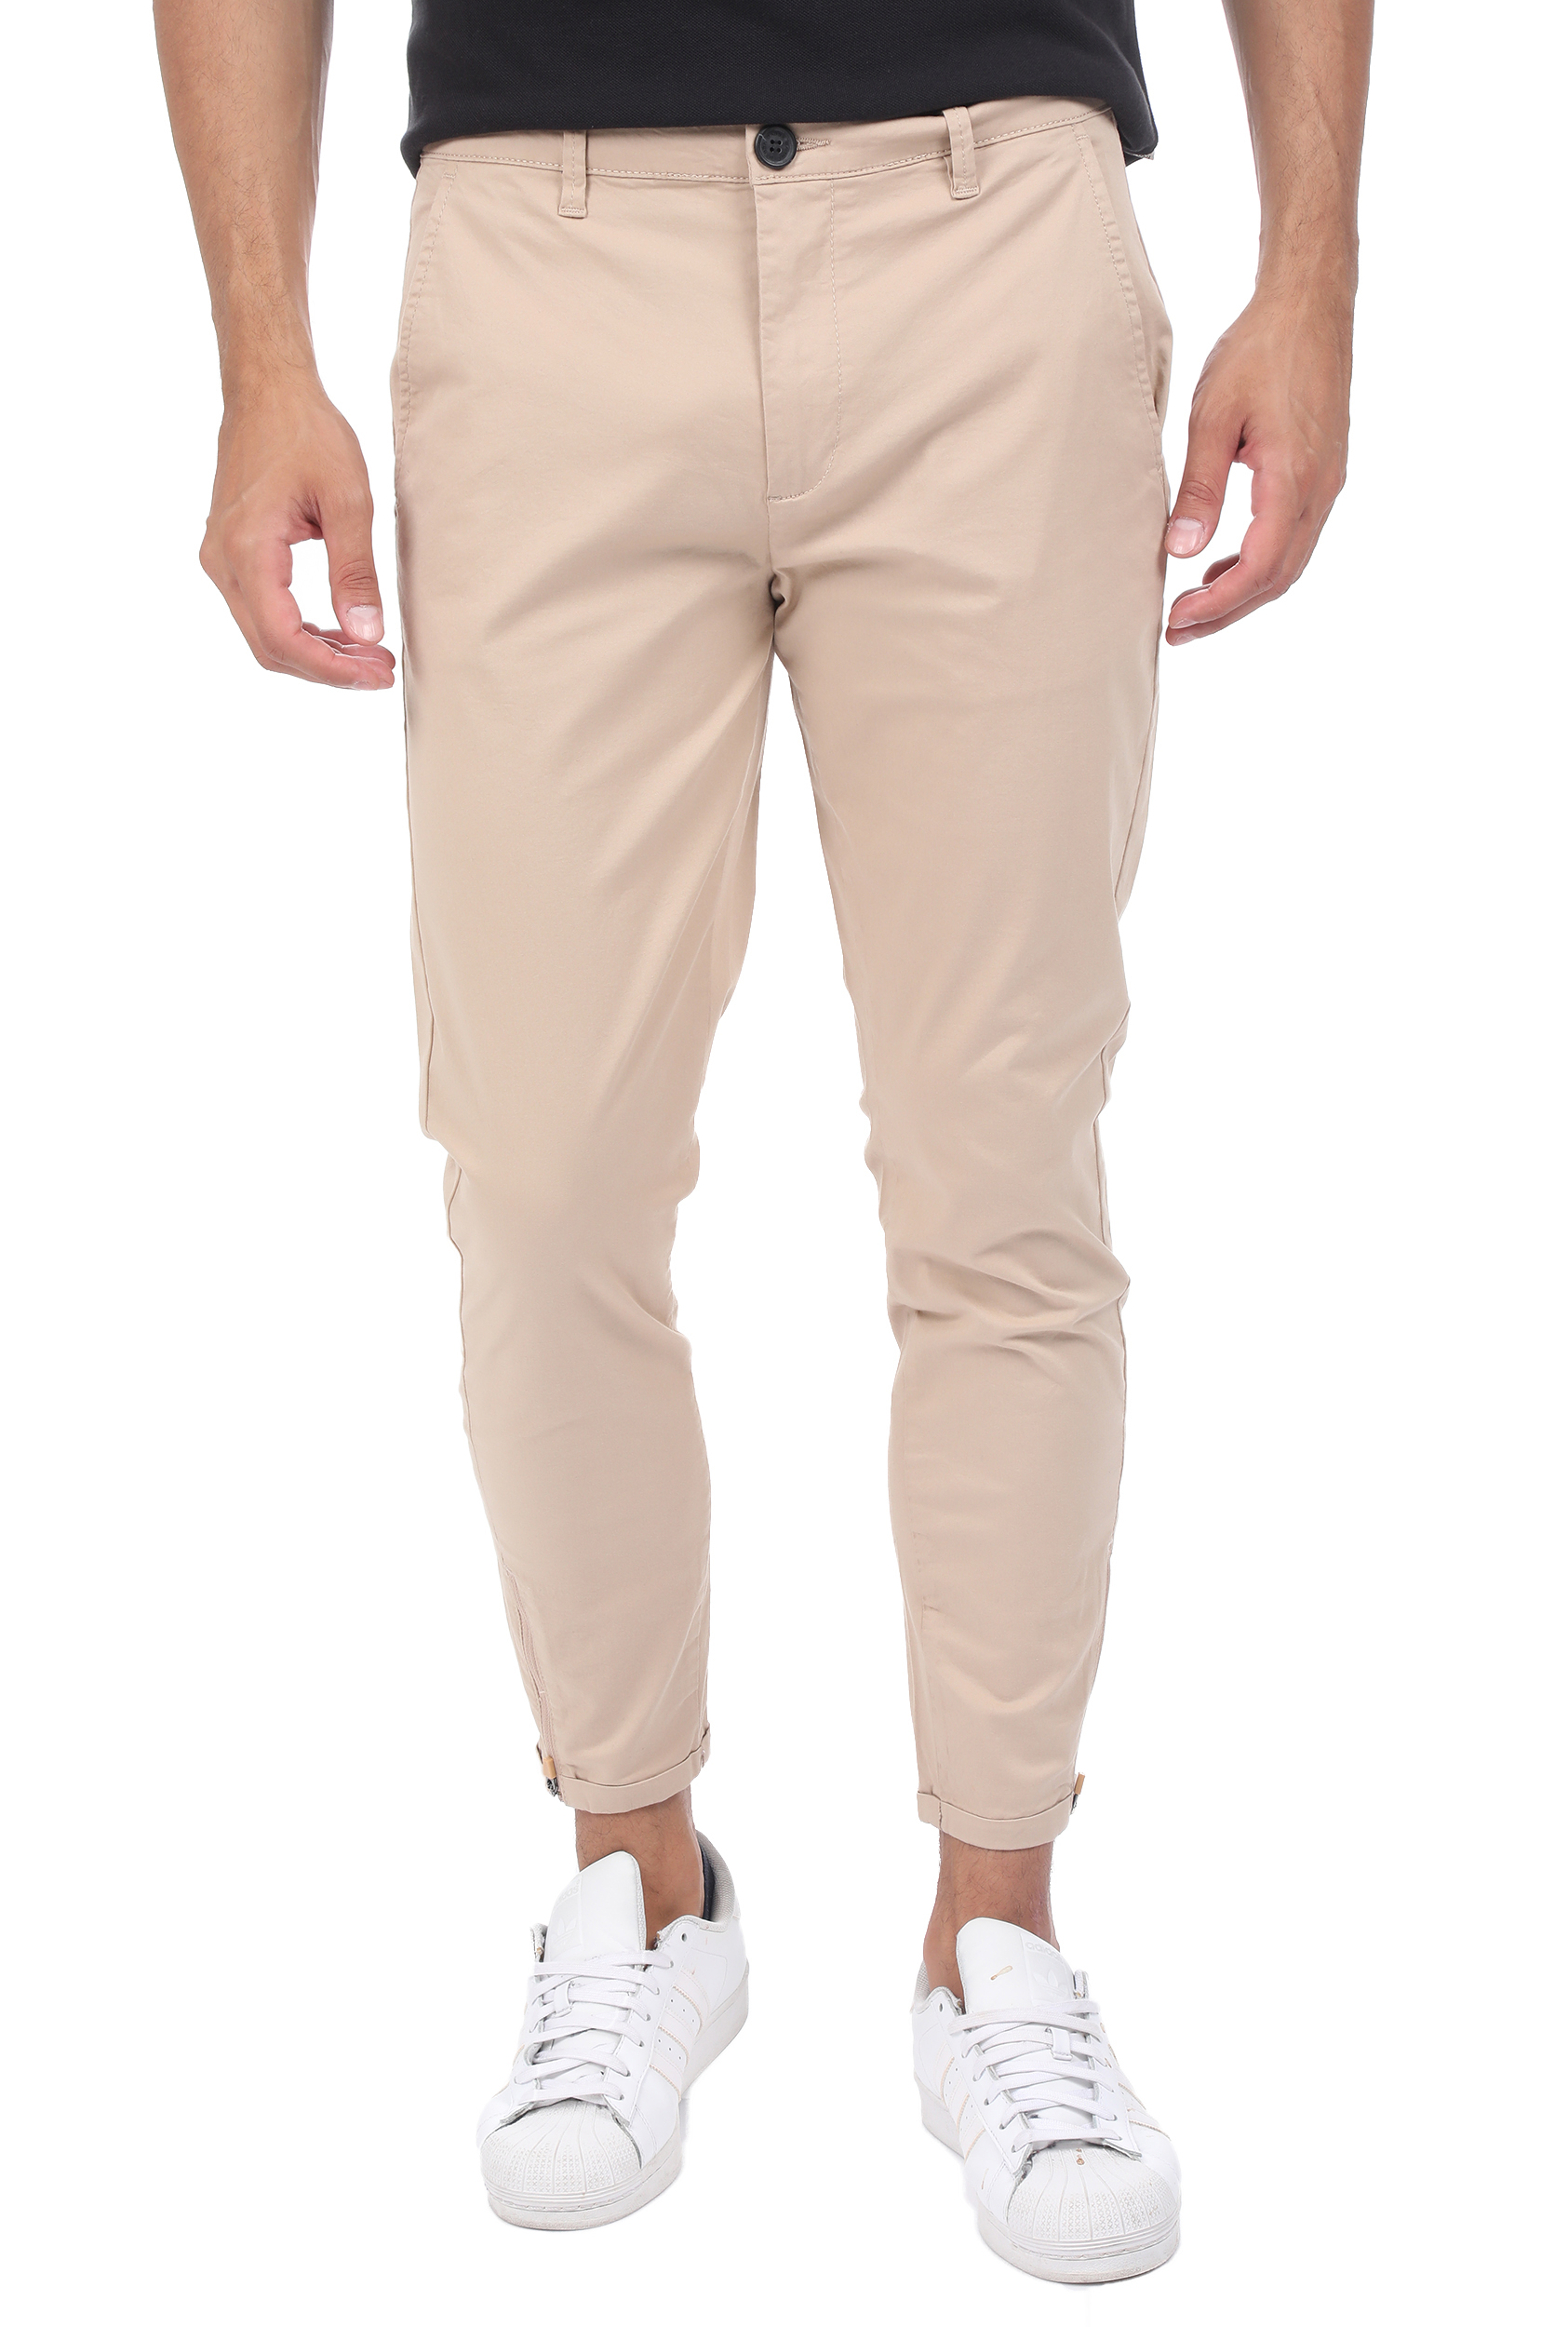 Ανδρικά/Ρούχα/Παντελόνια/Chinos GABBA - Ανδρικό παντελόνι GABBA Pisa Lit μπεζ